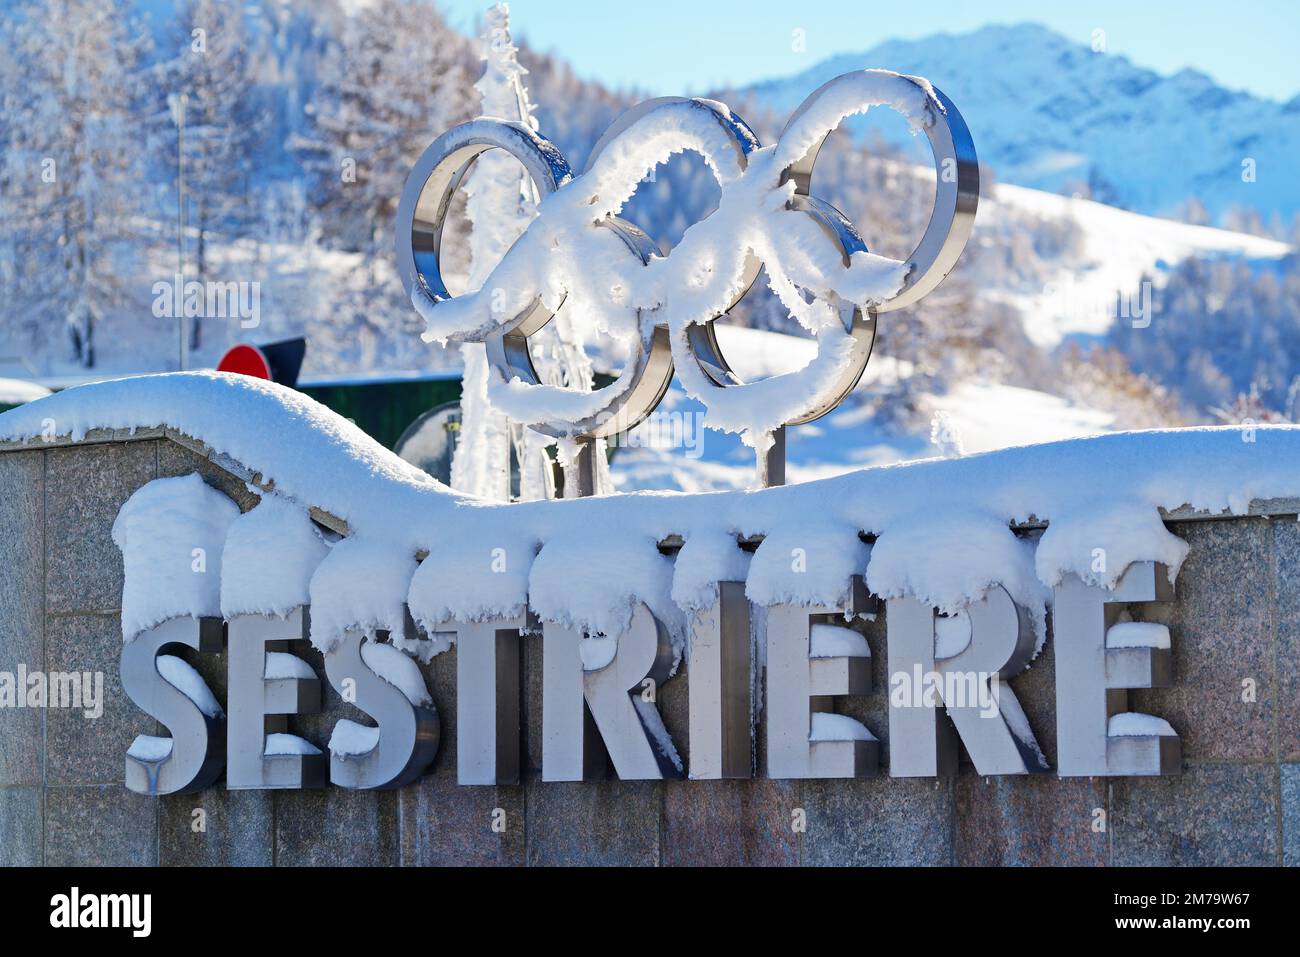 Segno del villaggio alpino di Sestriere, che è stato il luogo delle Olimpiadi invernali nel 2006. Sestriere, Italia - Dicembre 2022 Foto Stock